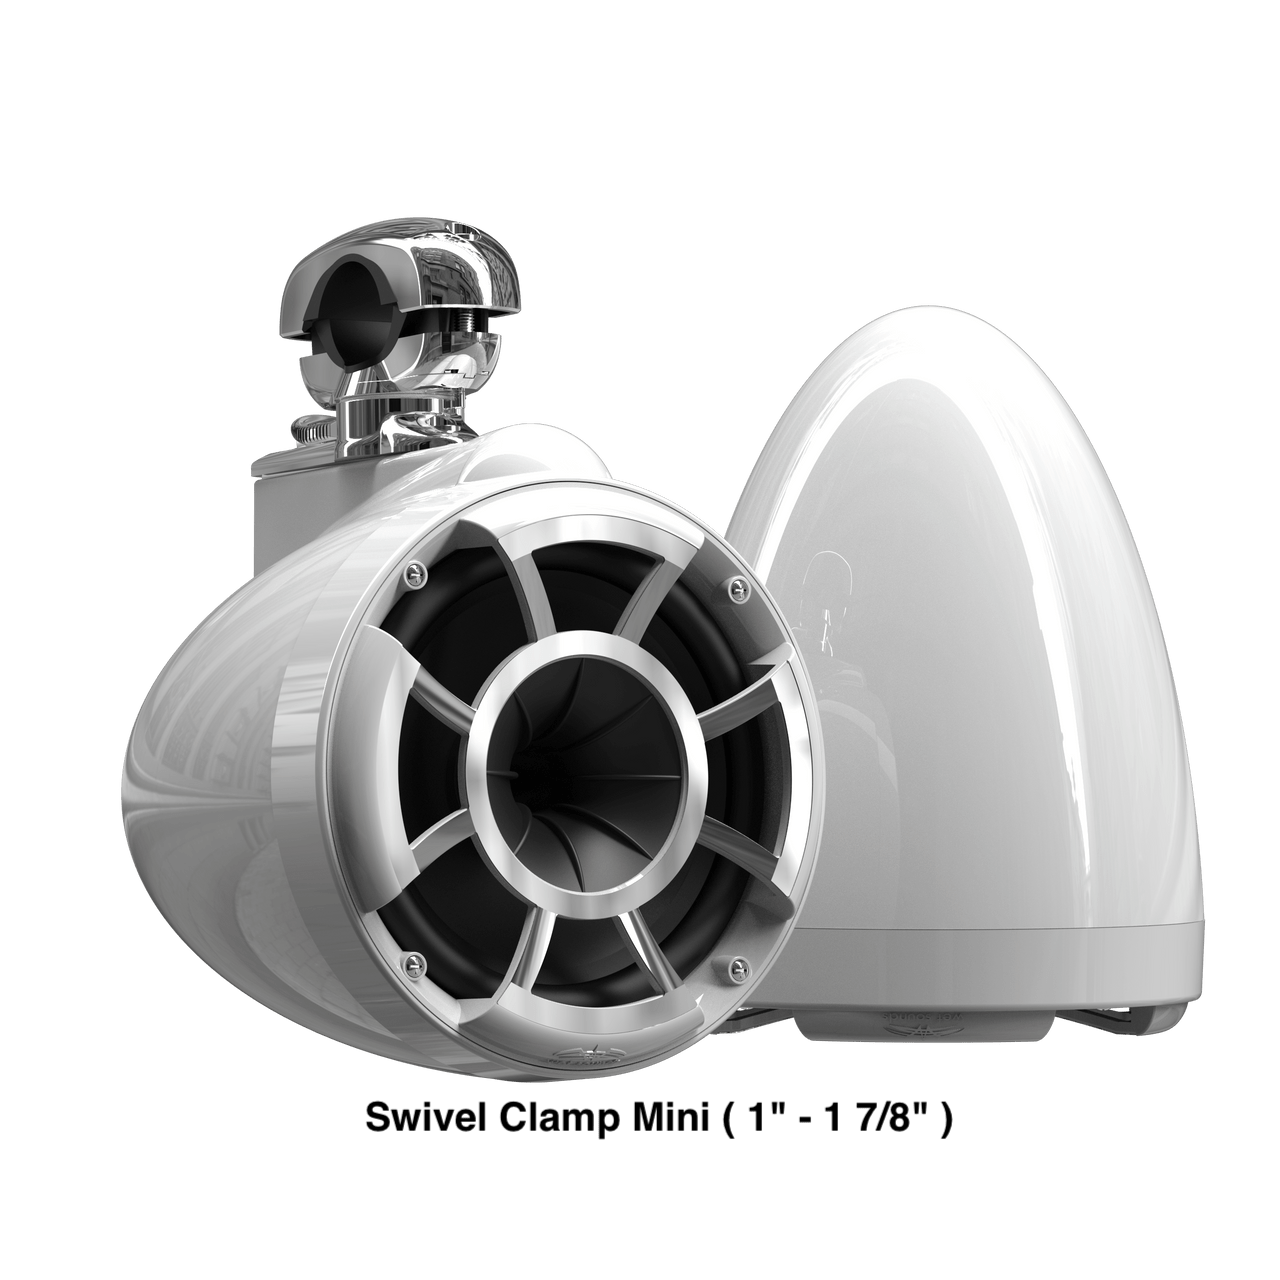 Wet Sounds Boat Wake Tower Speakers Swivel Clamp Mini ( 1" - 1 7/8" ) Wet Sounds  REV10™ White V2 | Revolution Series 10" White Tower Speakers